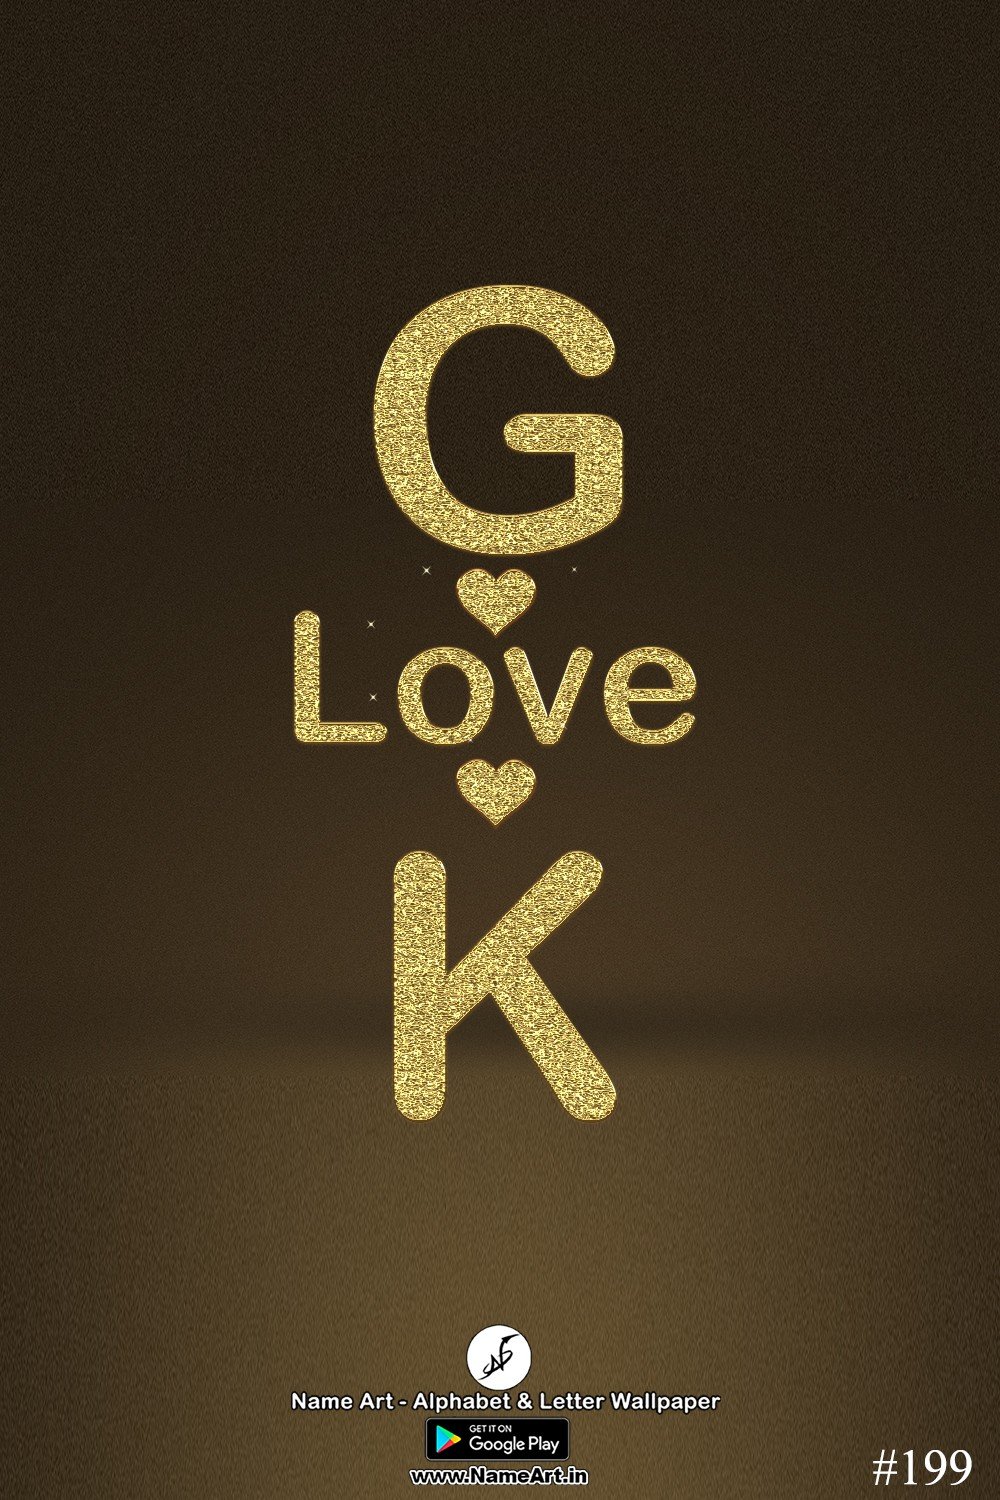 GK | Whatsapp Status DP GK | GK Golden Love Status Cute Couple Whatsapp Status DP !! | New Whatsapp Status DP GK Images |